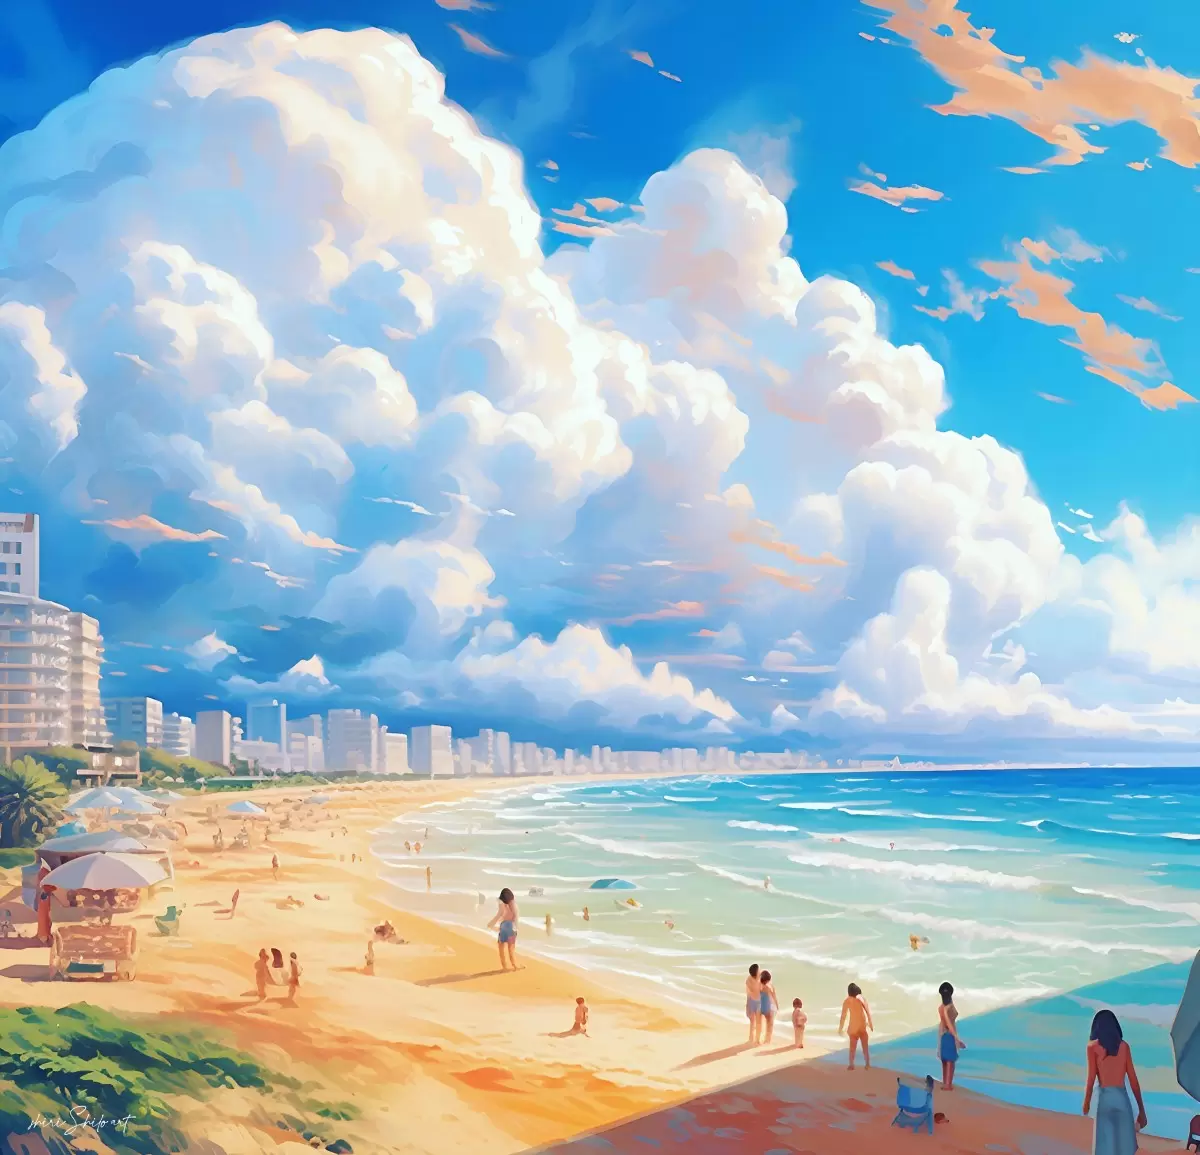 חוף הים המדהים של תל אביב - שירי שילה - תמונות ים ושמים לסלון אמנות נאיבית  - מק''ט: 446266